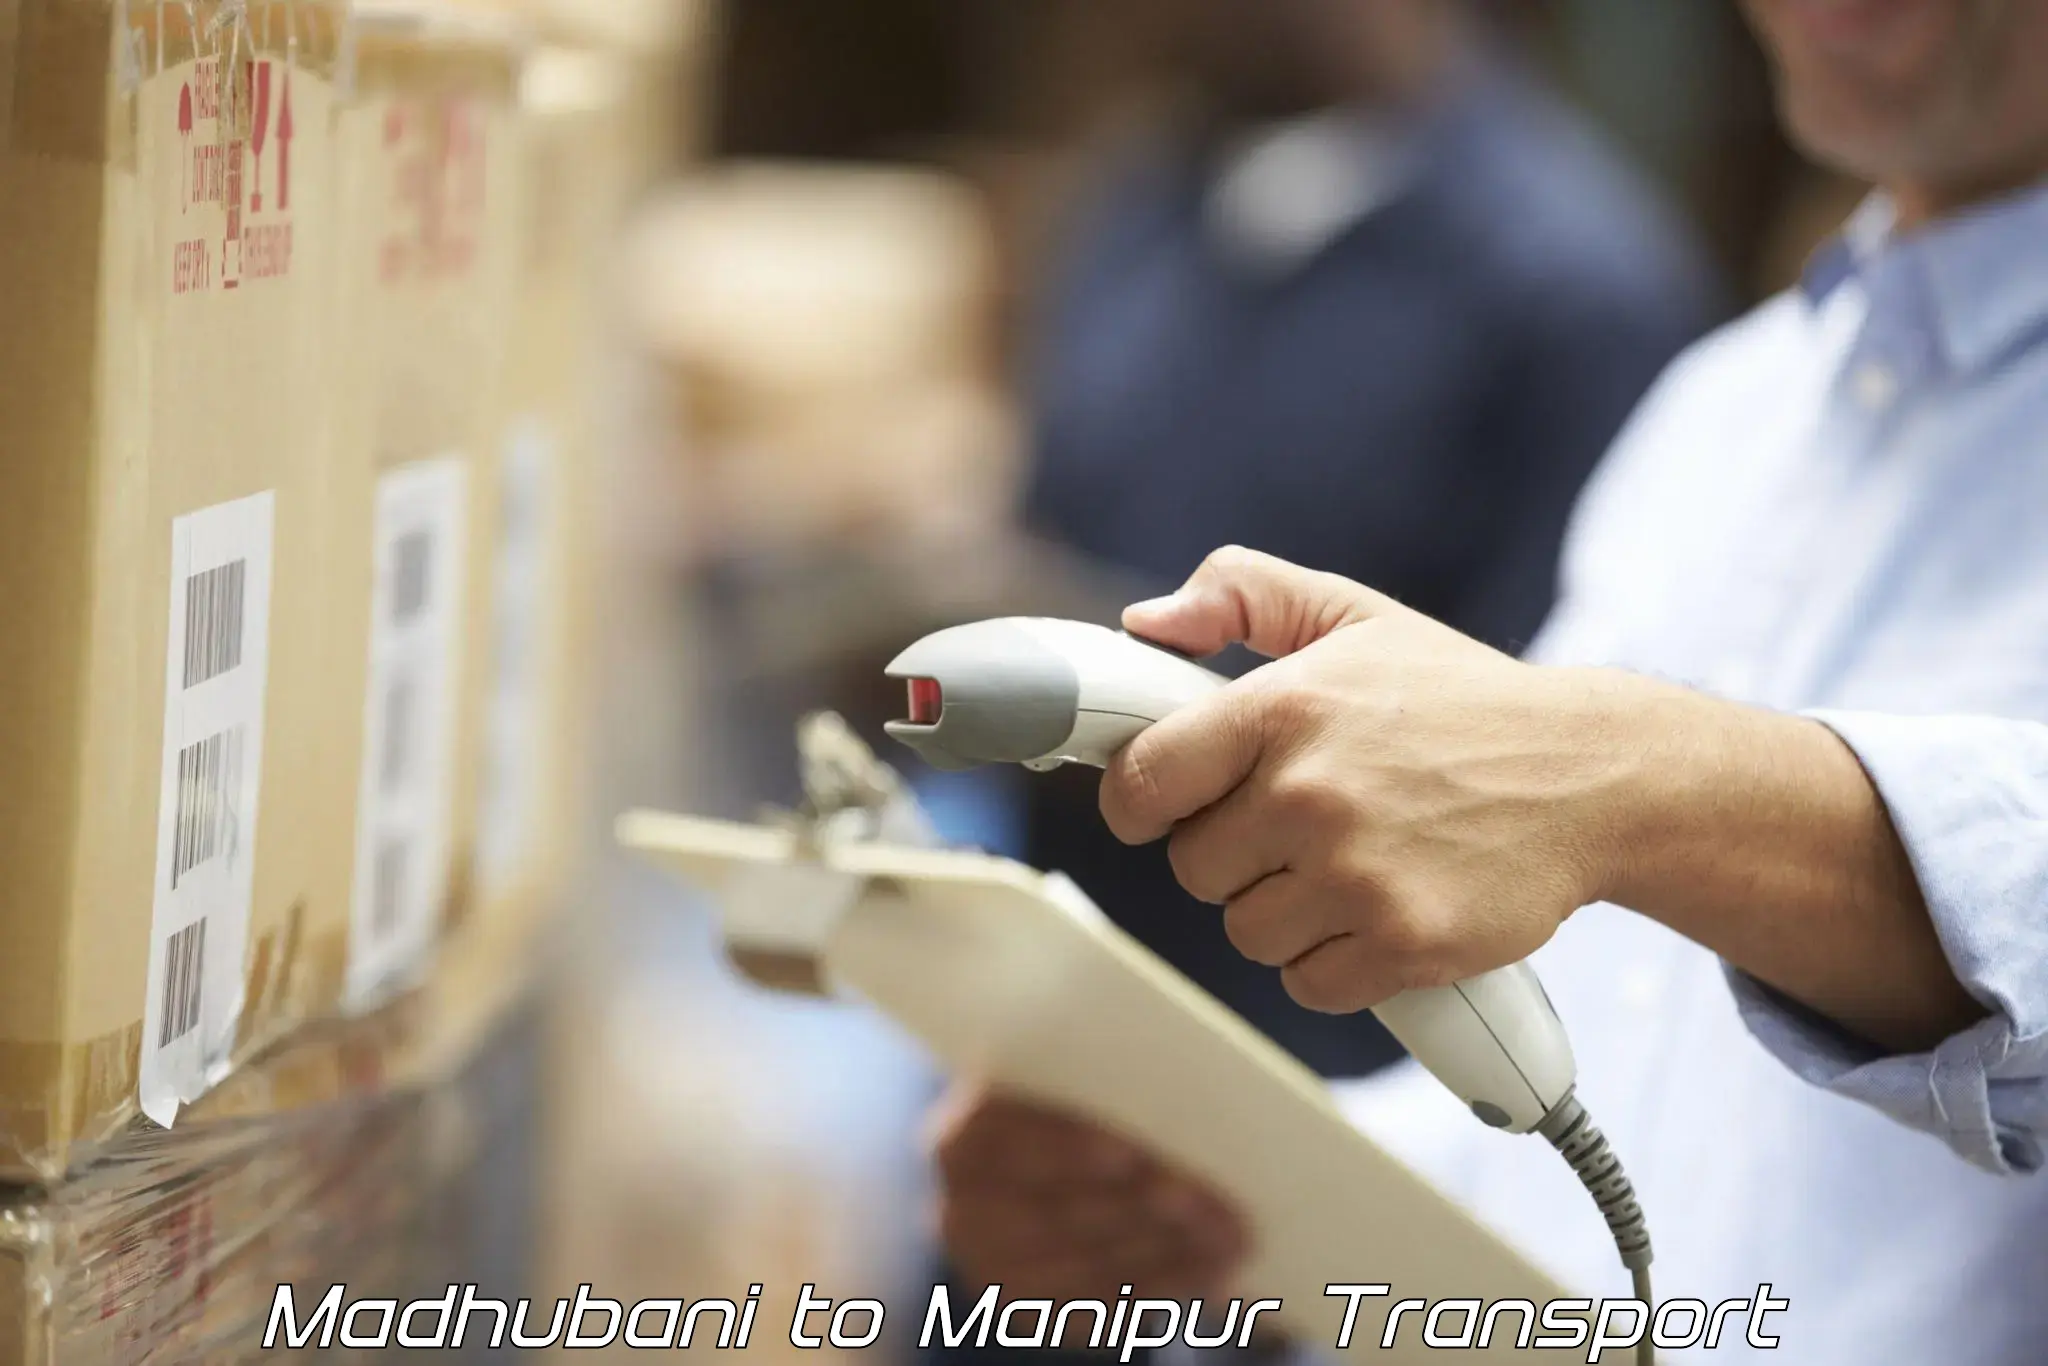 International cargo transportation services Madhubani to Manipur